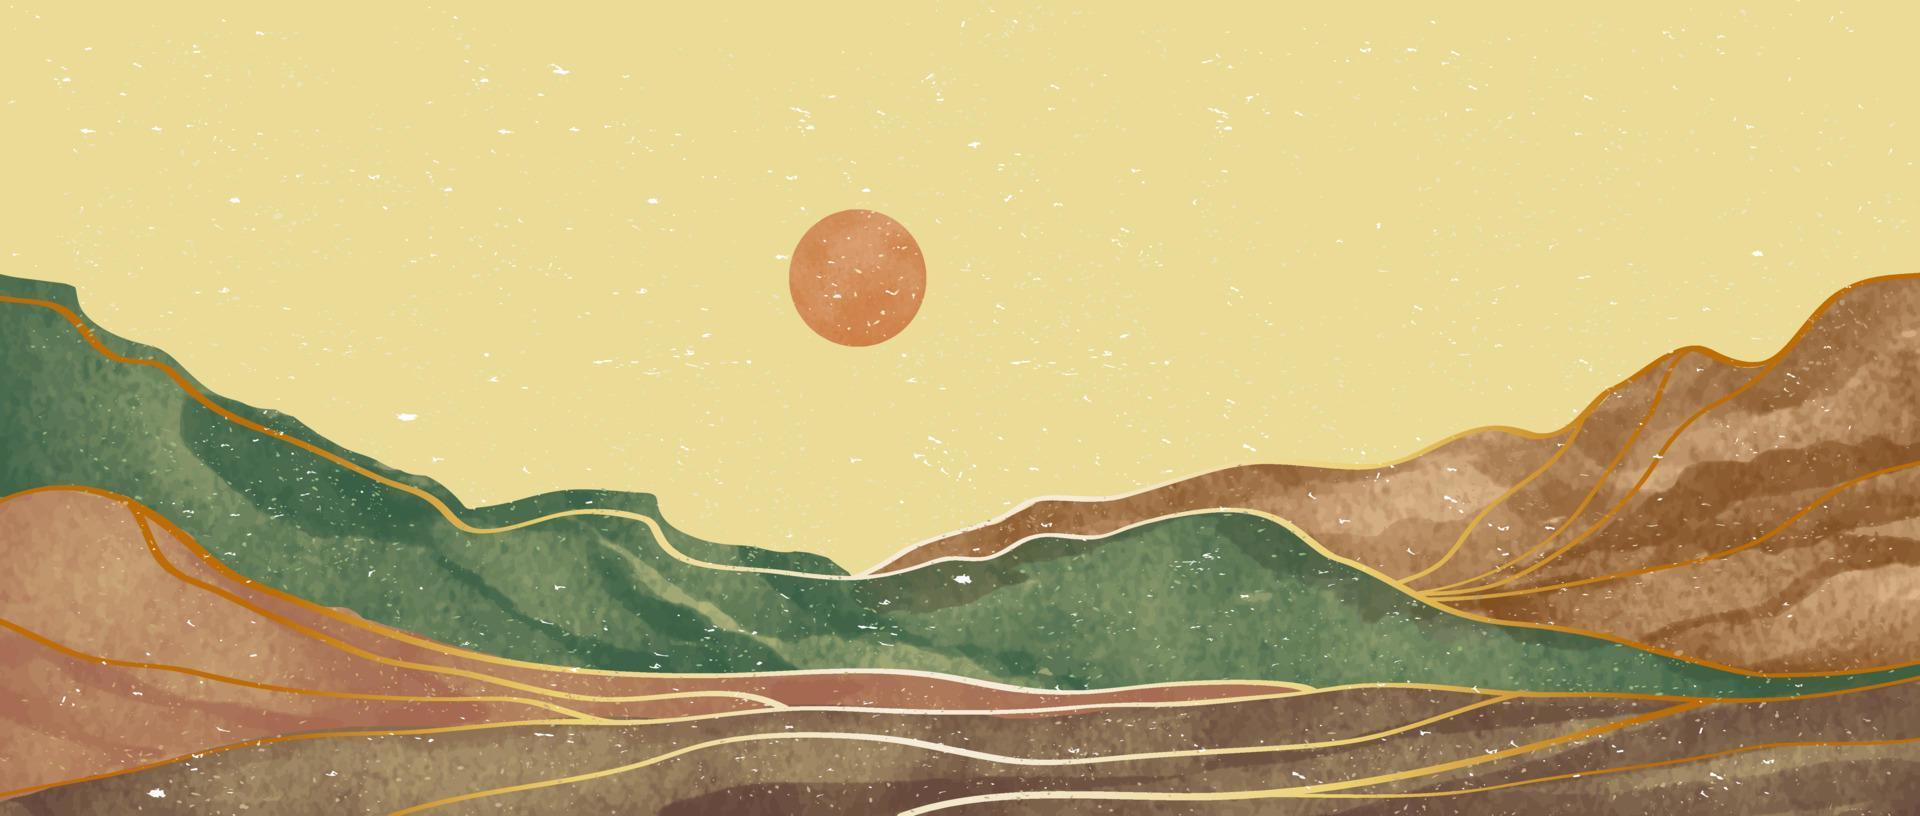 creatief minimalistische hand- geschilderd illustraties van midden eeuw modern. abstract hedendaags esthetisch achtergronden landschappen met berg, heuvel, zonsondergang, zee. vector illustraties